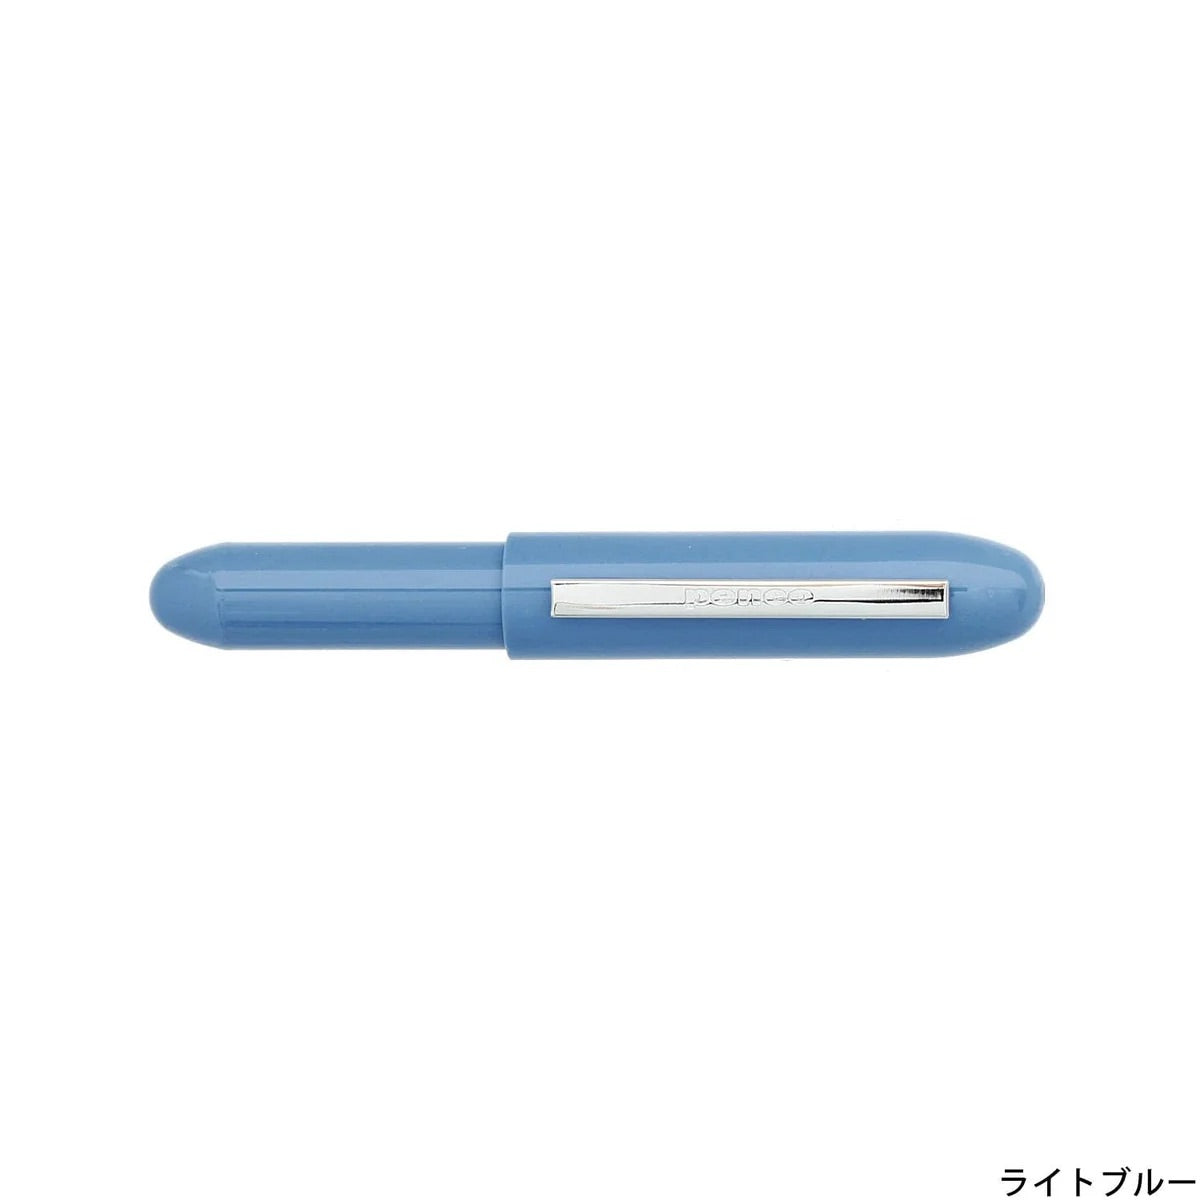 Penco Bullet Pen Light (VARIOUS COLOURS)